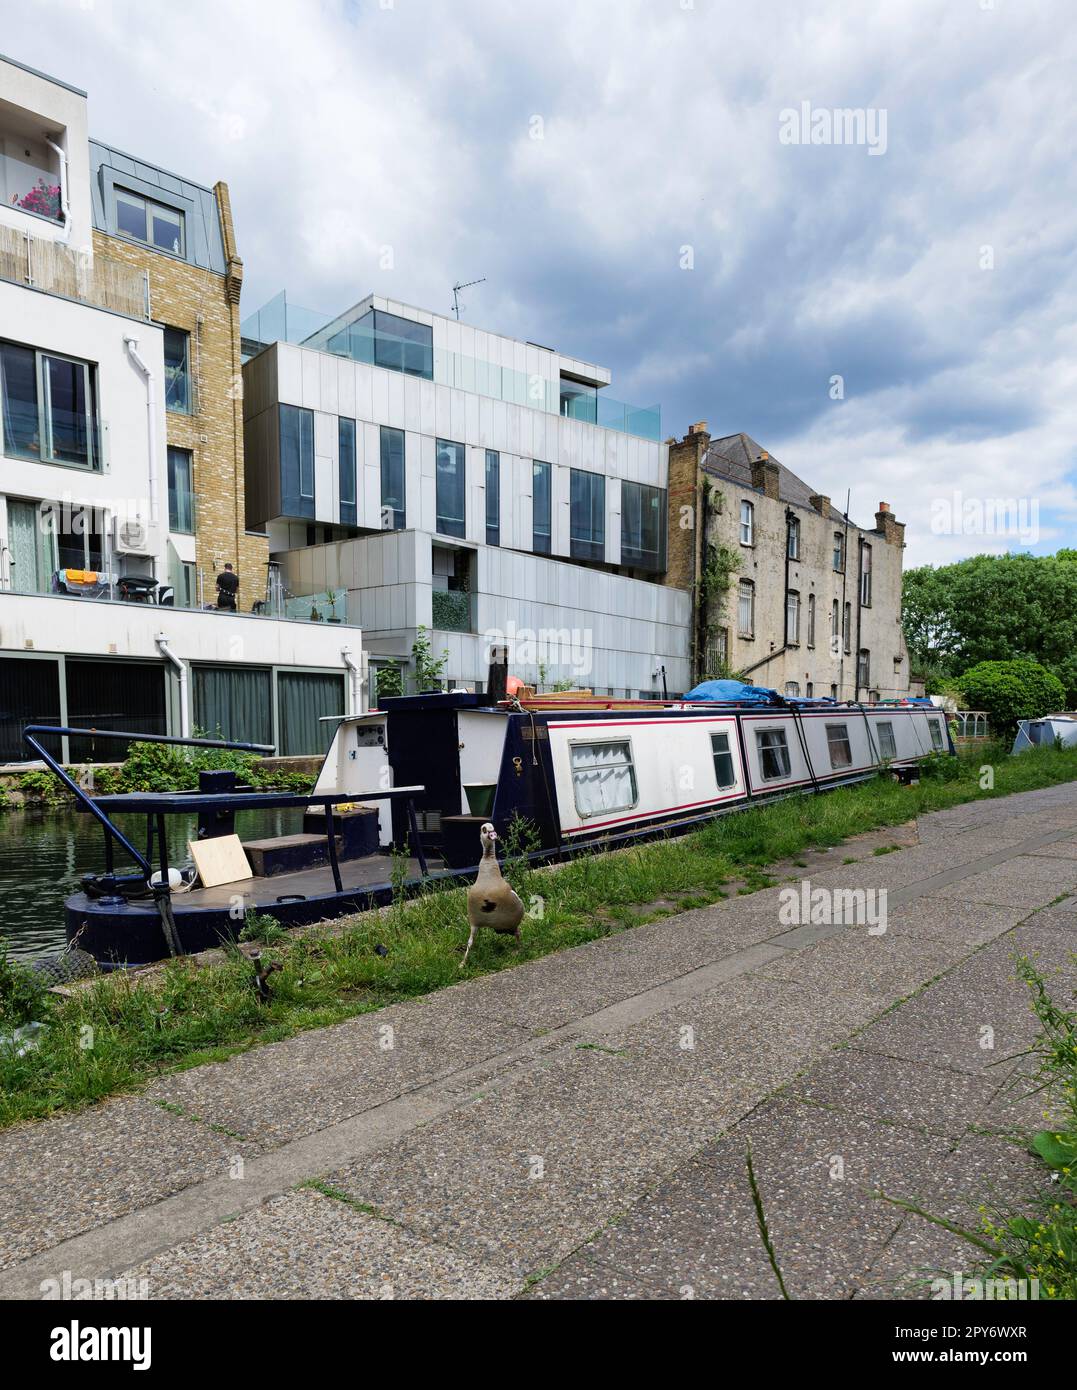 London - 05 21 2022 Uhr: Mallard-Ente vor Hausbooten, die auf dem Fußweg des Grand Union Canal in der Nähe der Adela Street festgemacht sind Stockfoto